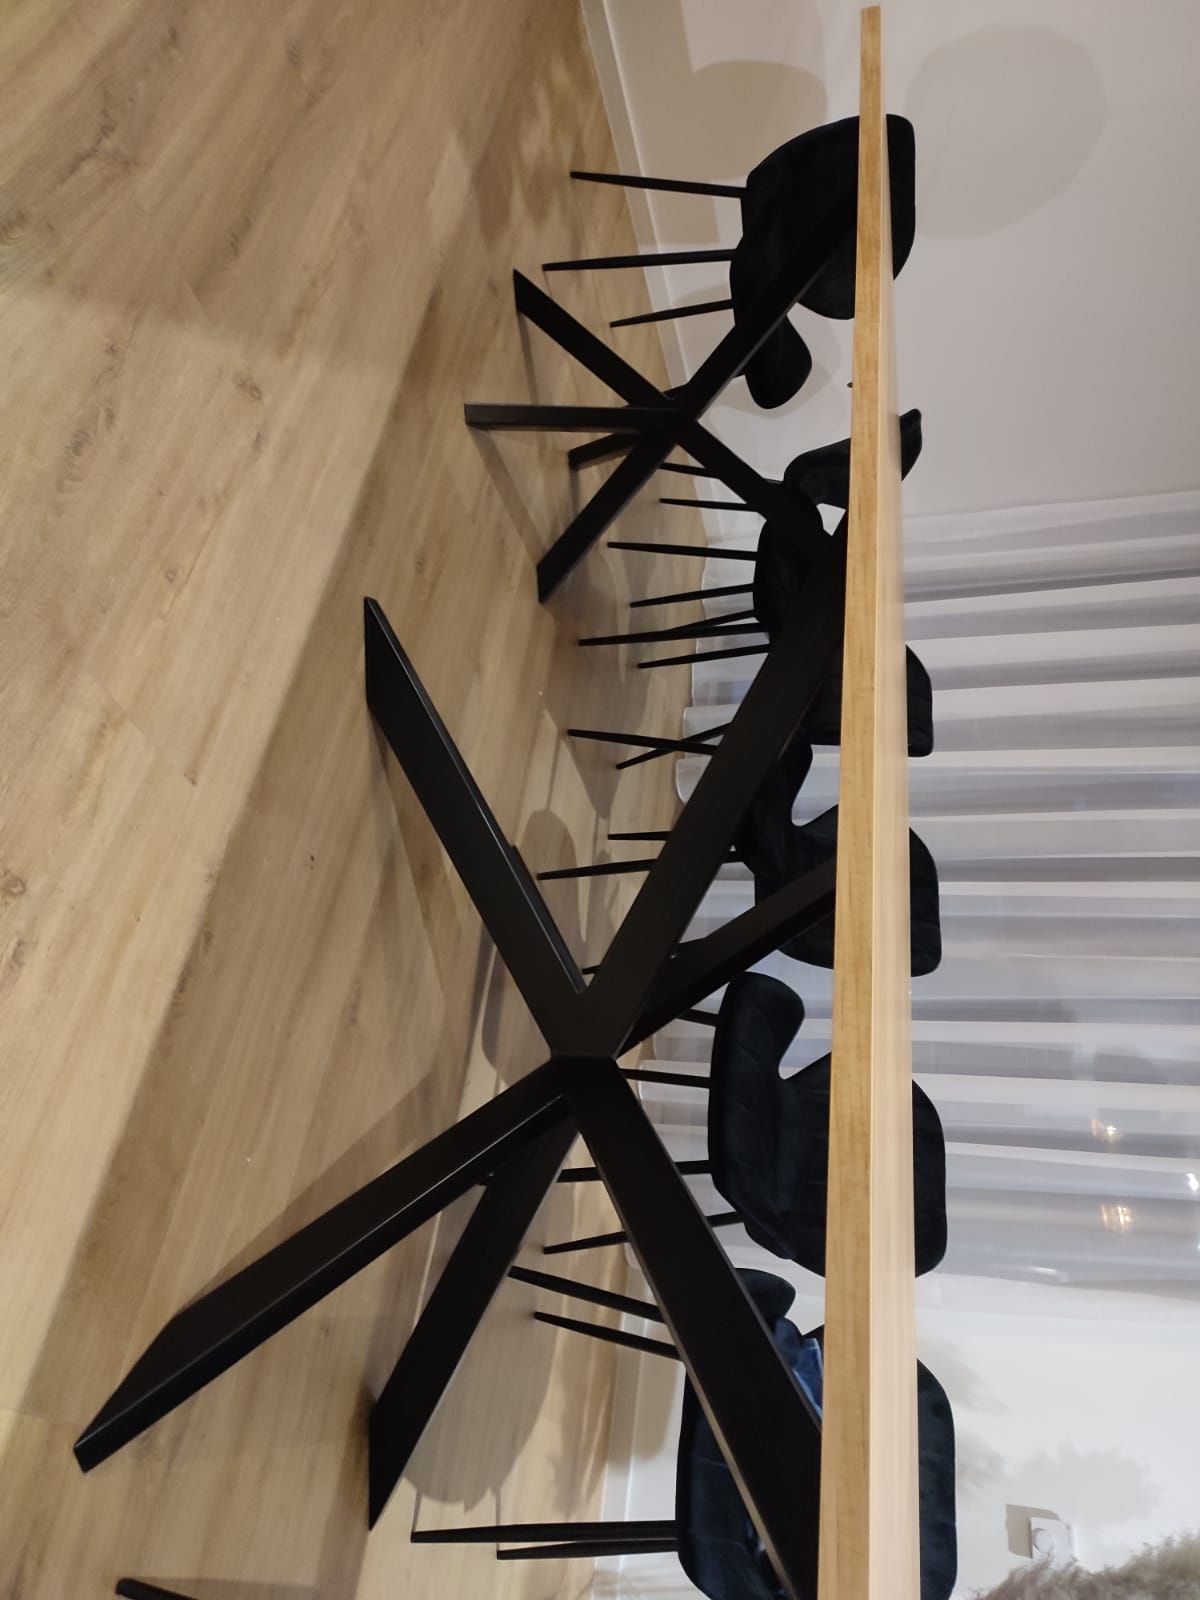 Stół pająk loftowy stelaż metalowy